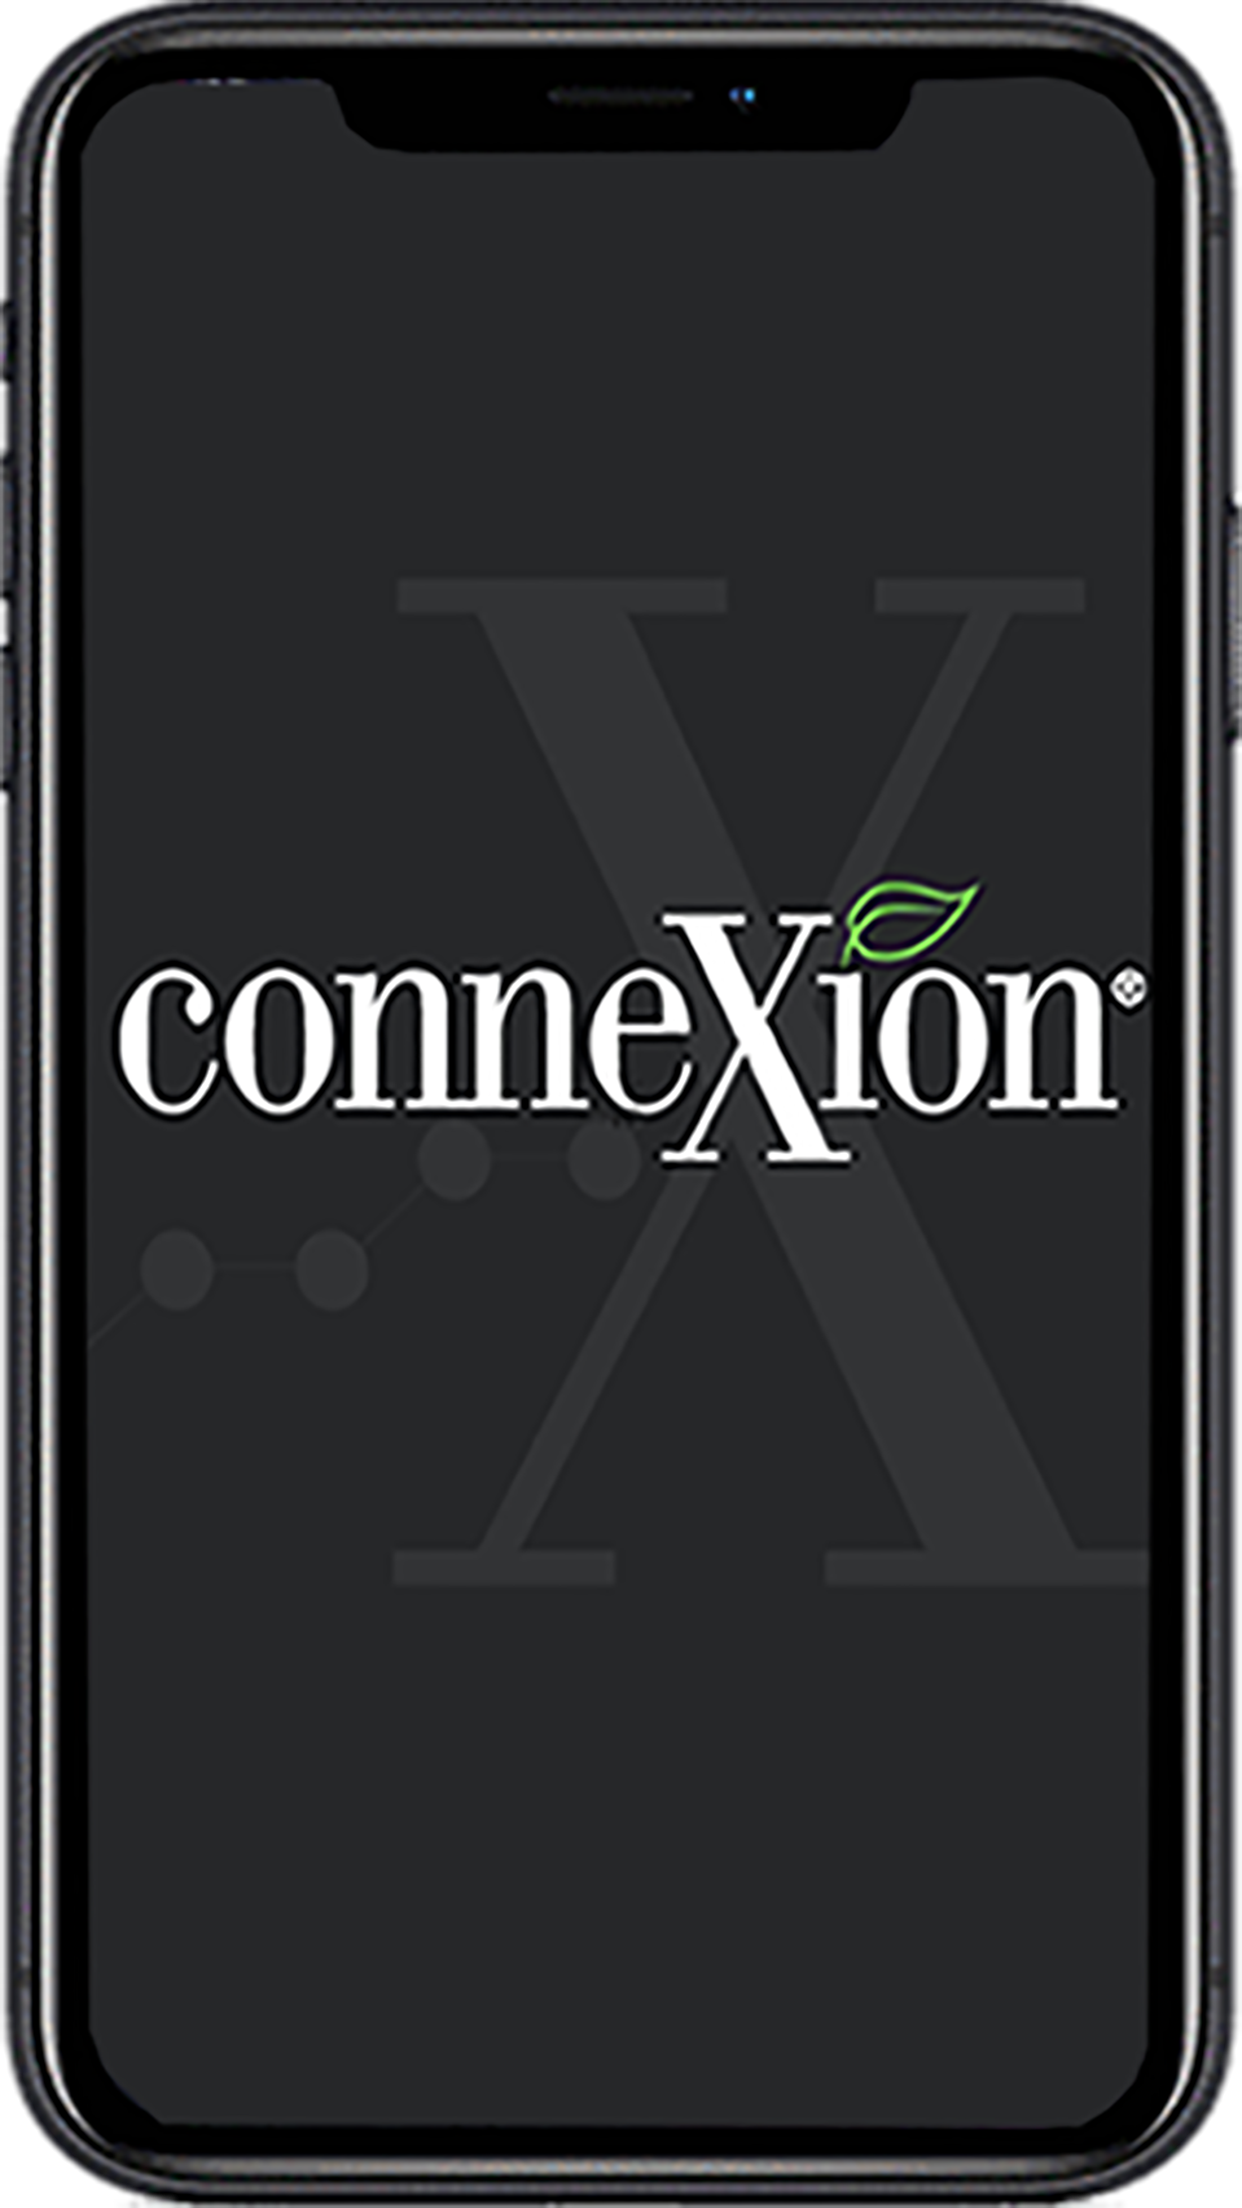 The Connexion ES Mobile App